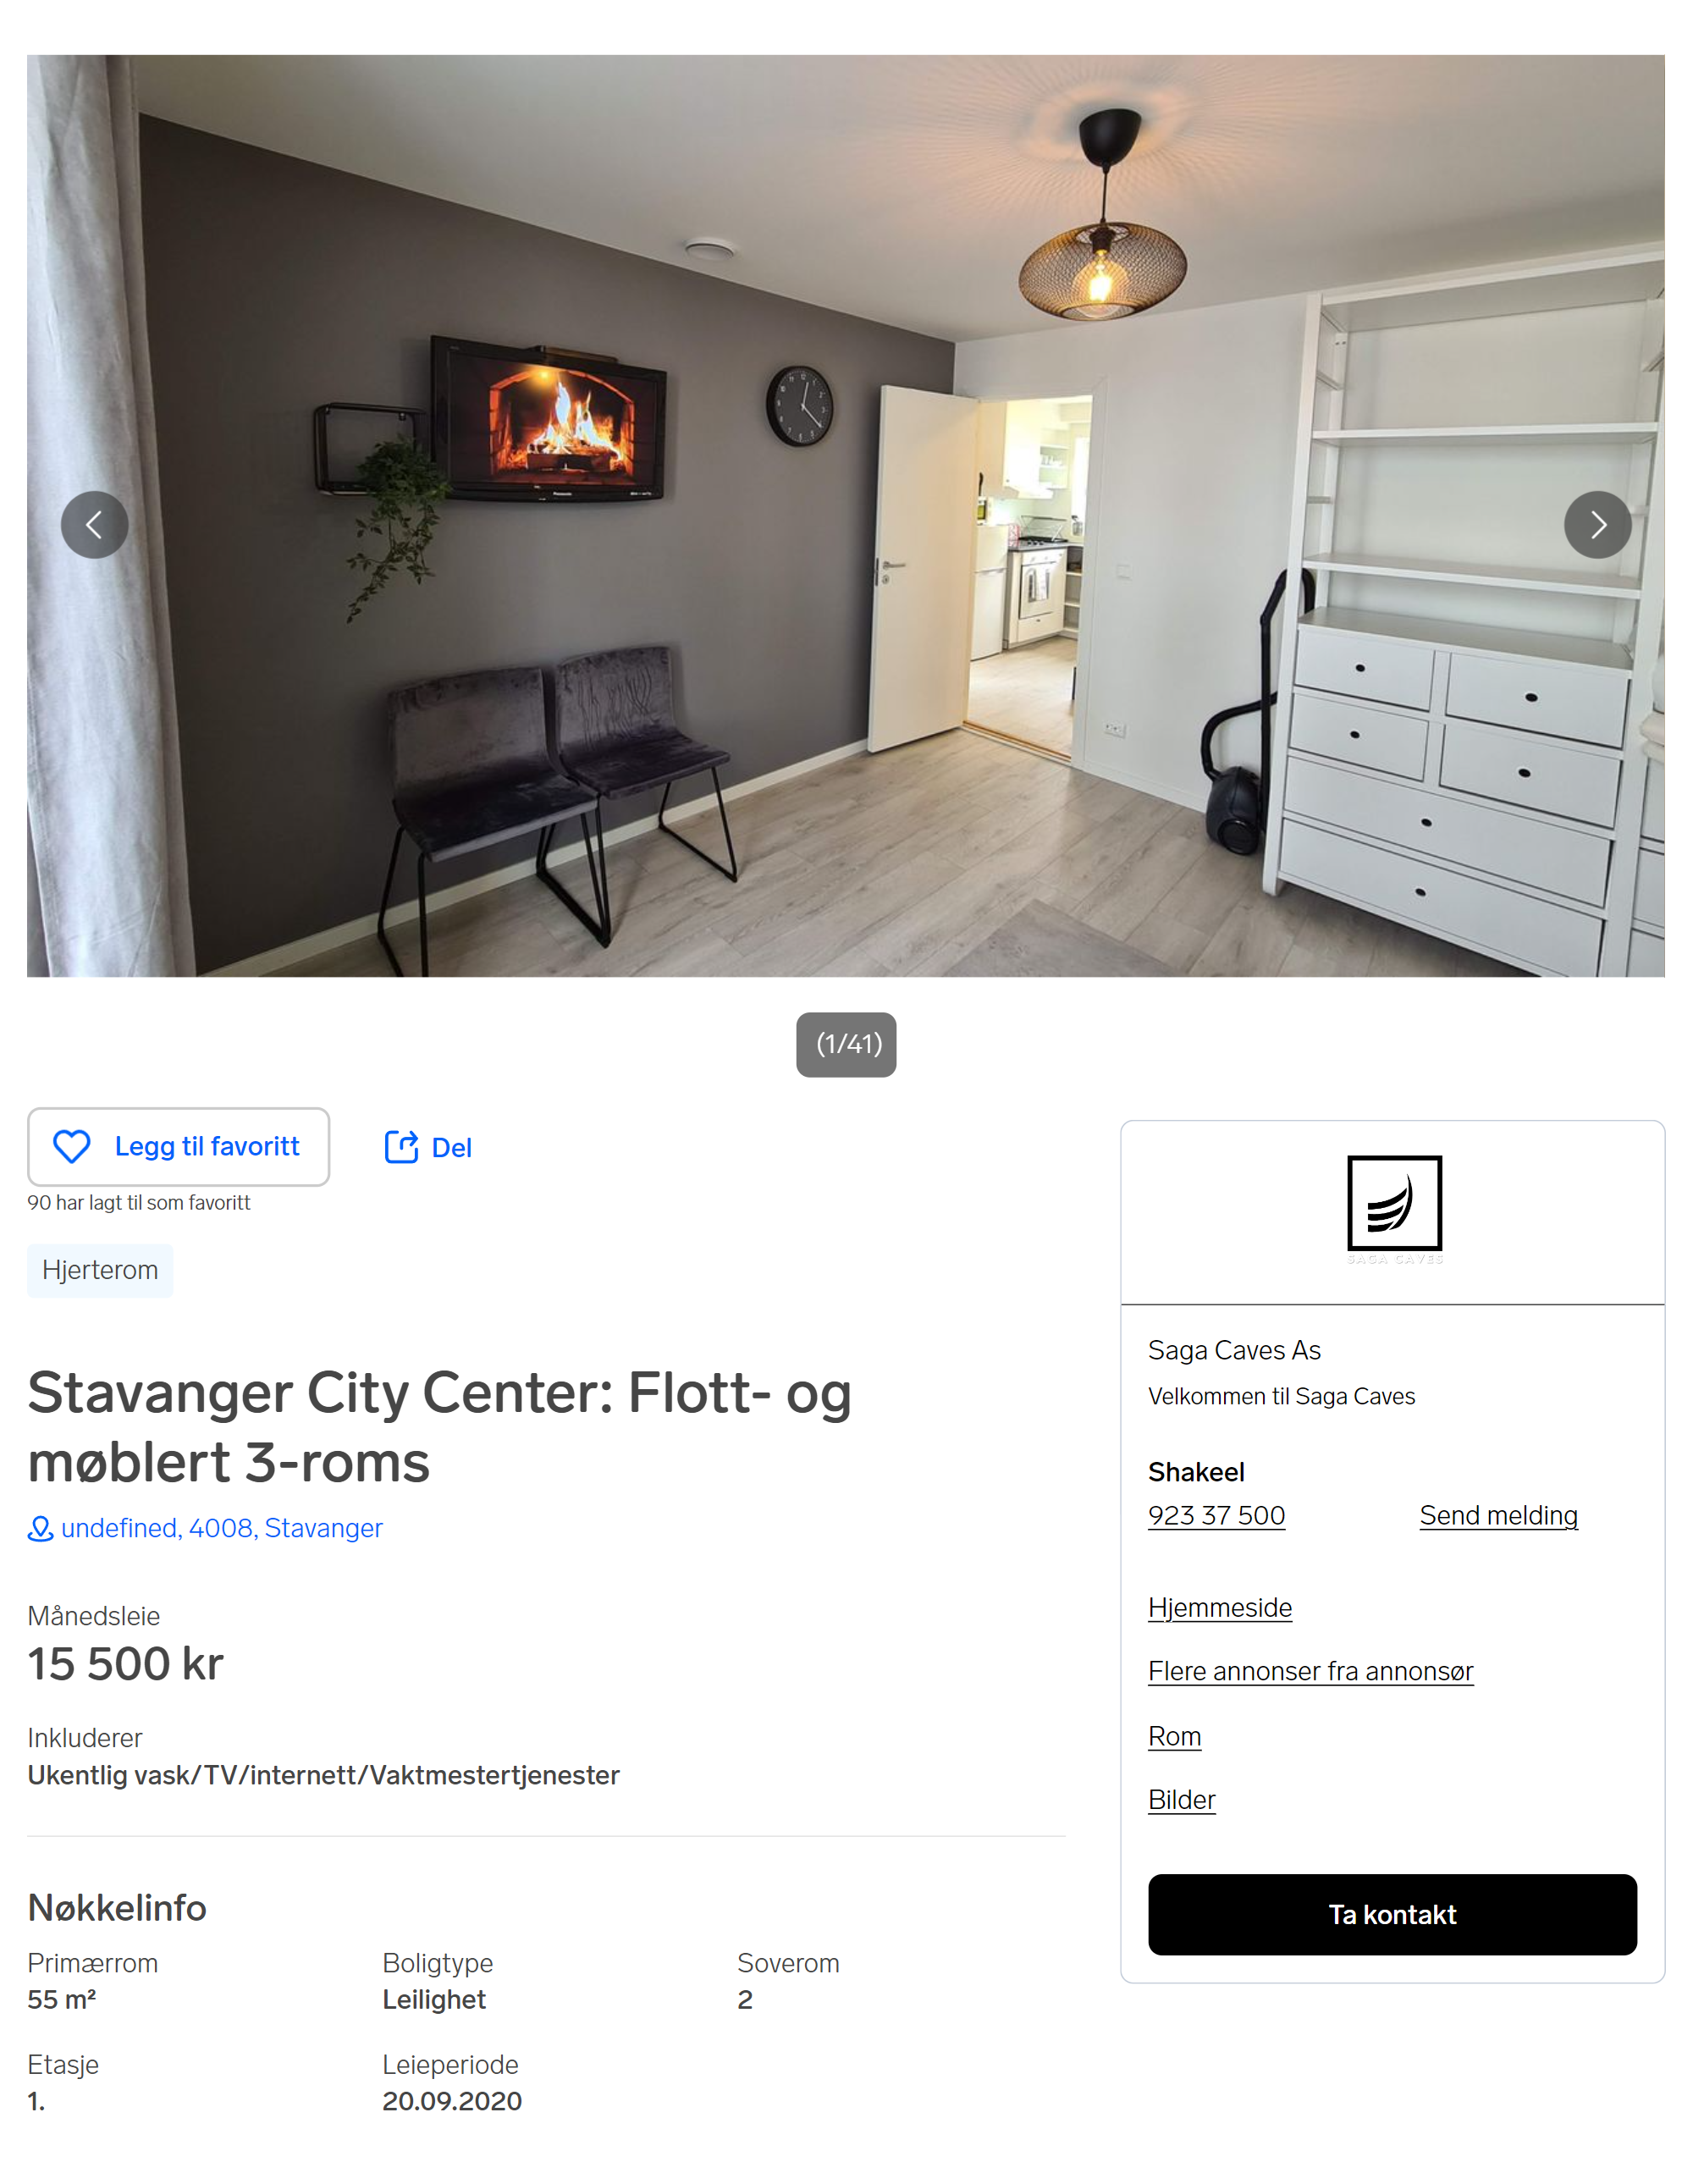 Такую трехкомнатную квартиру в Ставангере сдают за 15 500 kr в месяц. Источник: finn.no